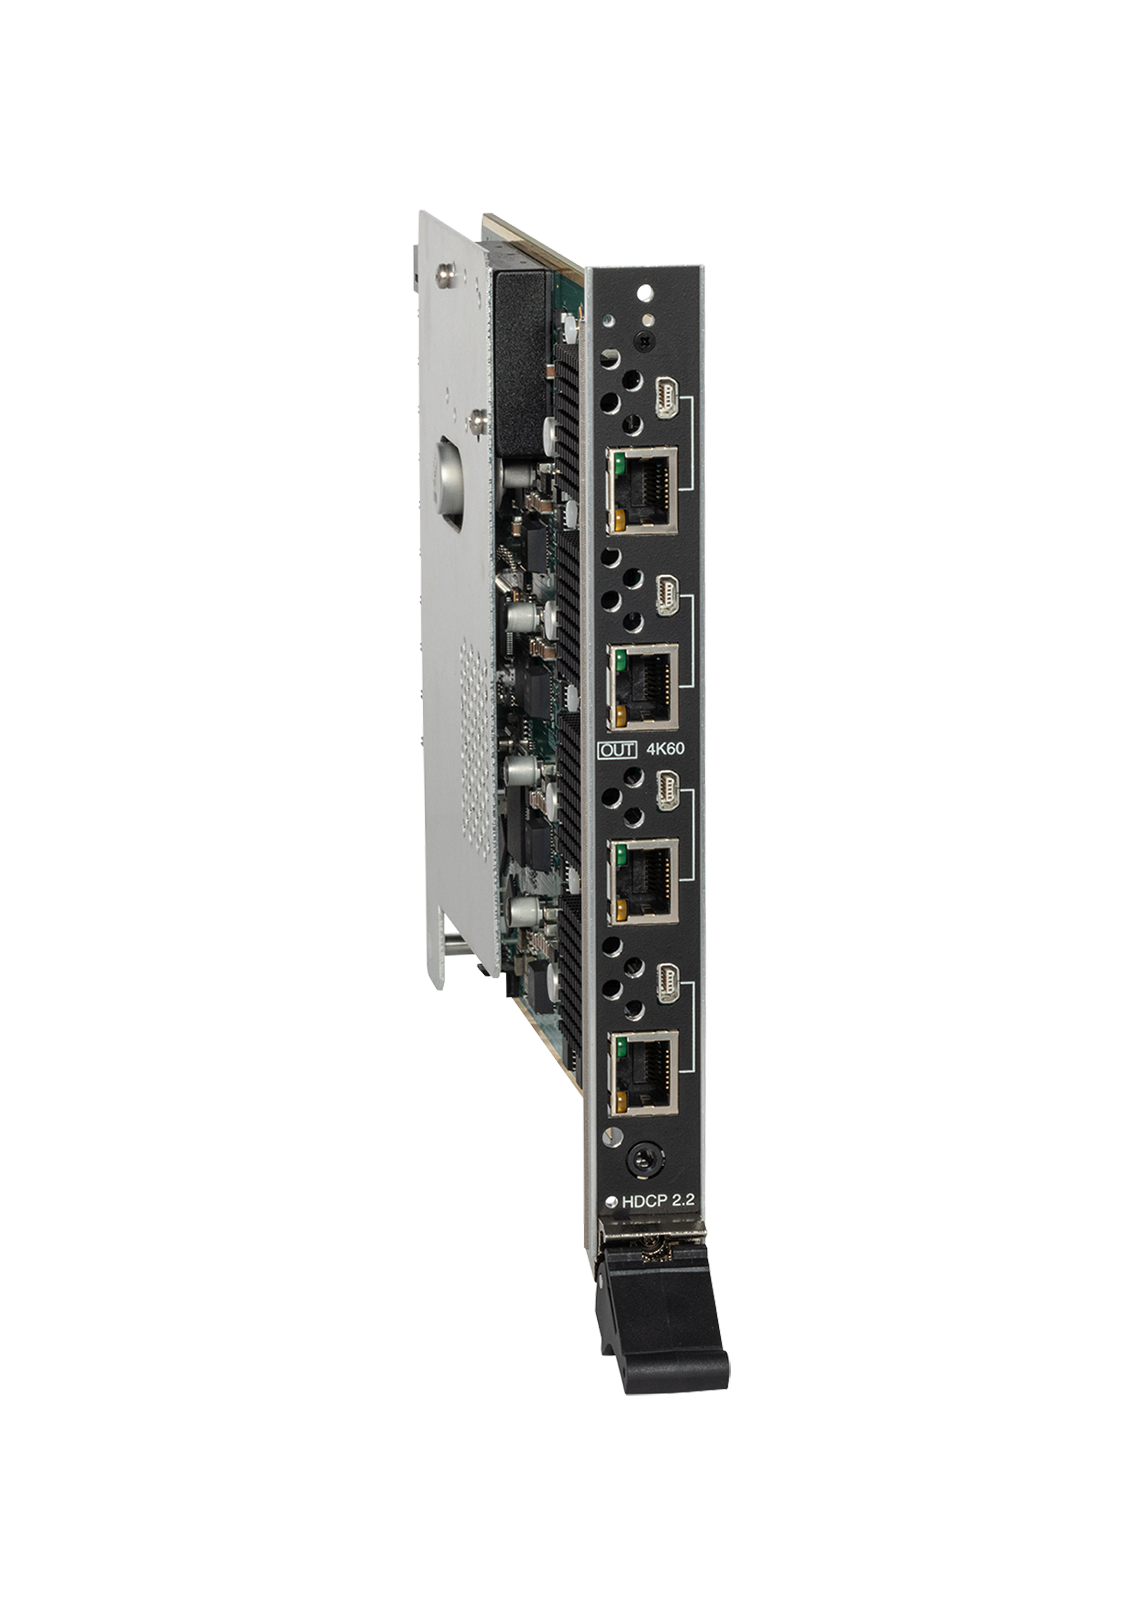 DGX-O-DXL-4K60, AMX Audio Video Control Systems